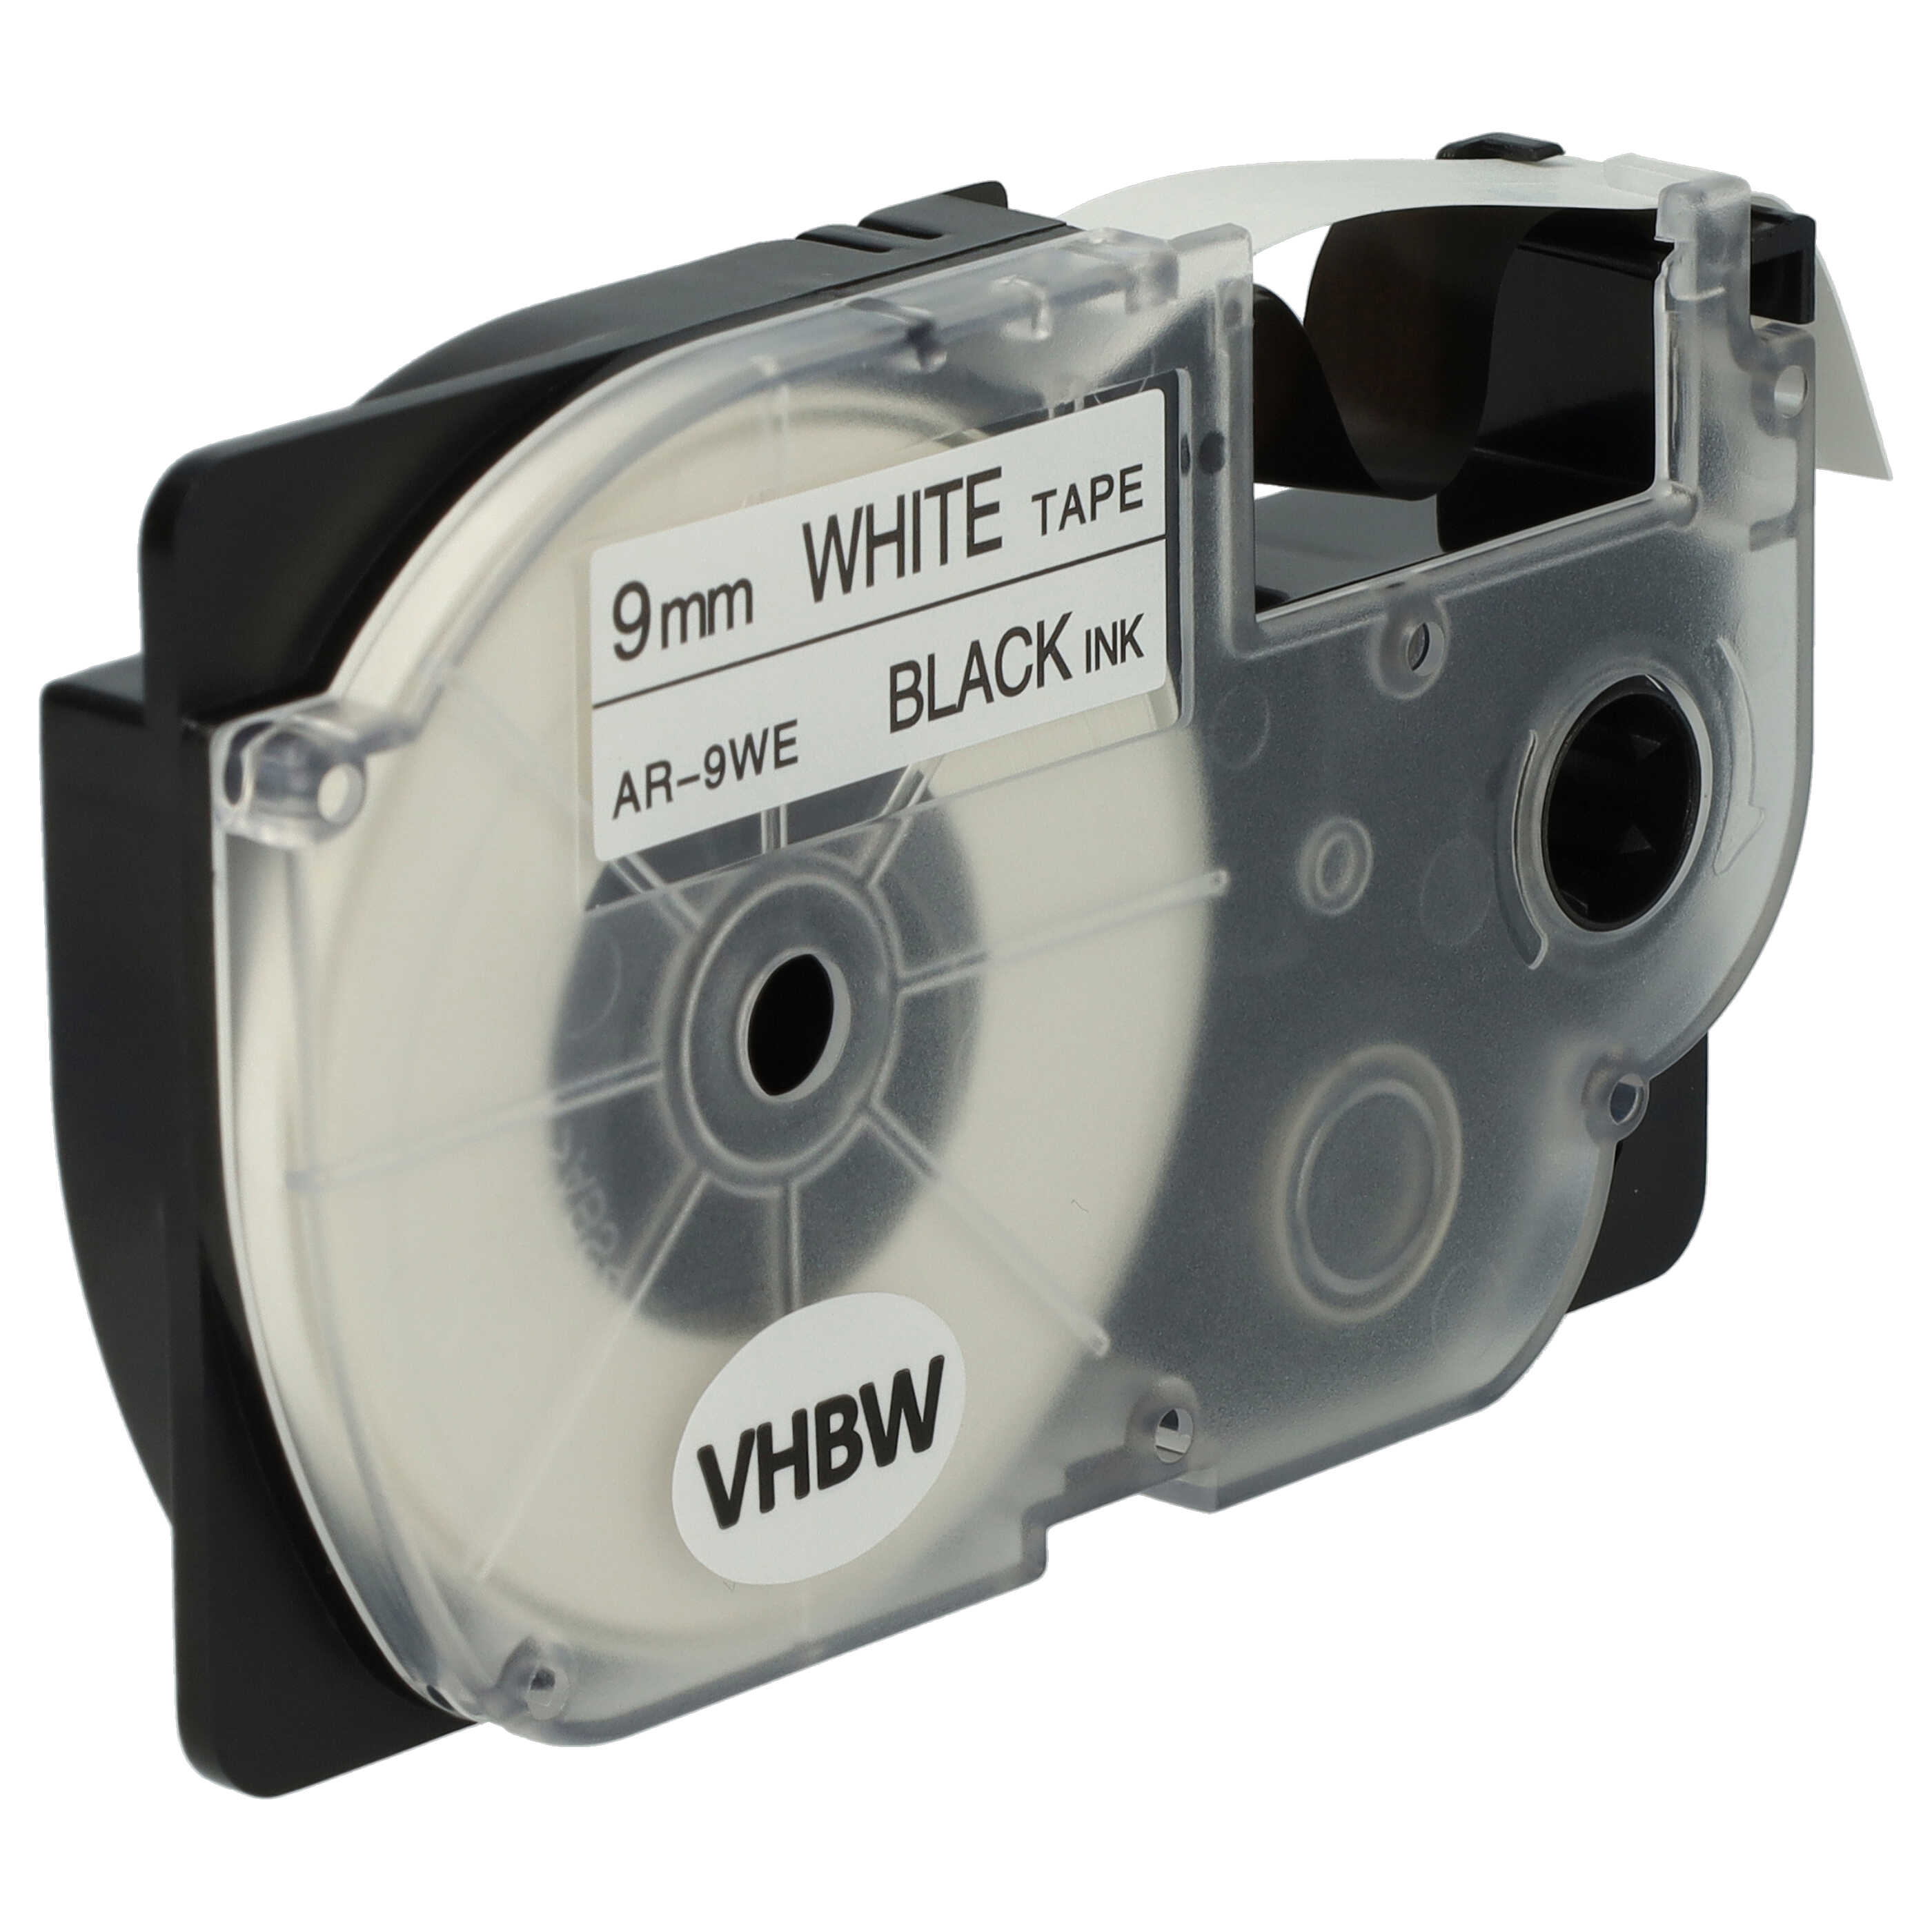 10x Cassettes à ruban remplacent Casio XR-9WE1 - 9mm lettrage Noir ruban Blanc